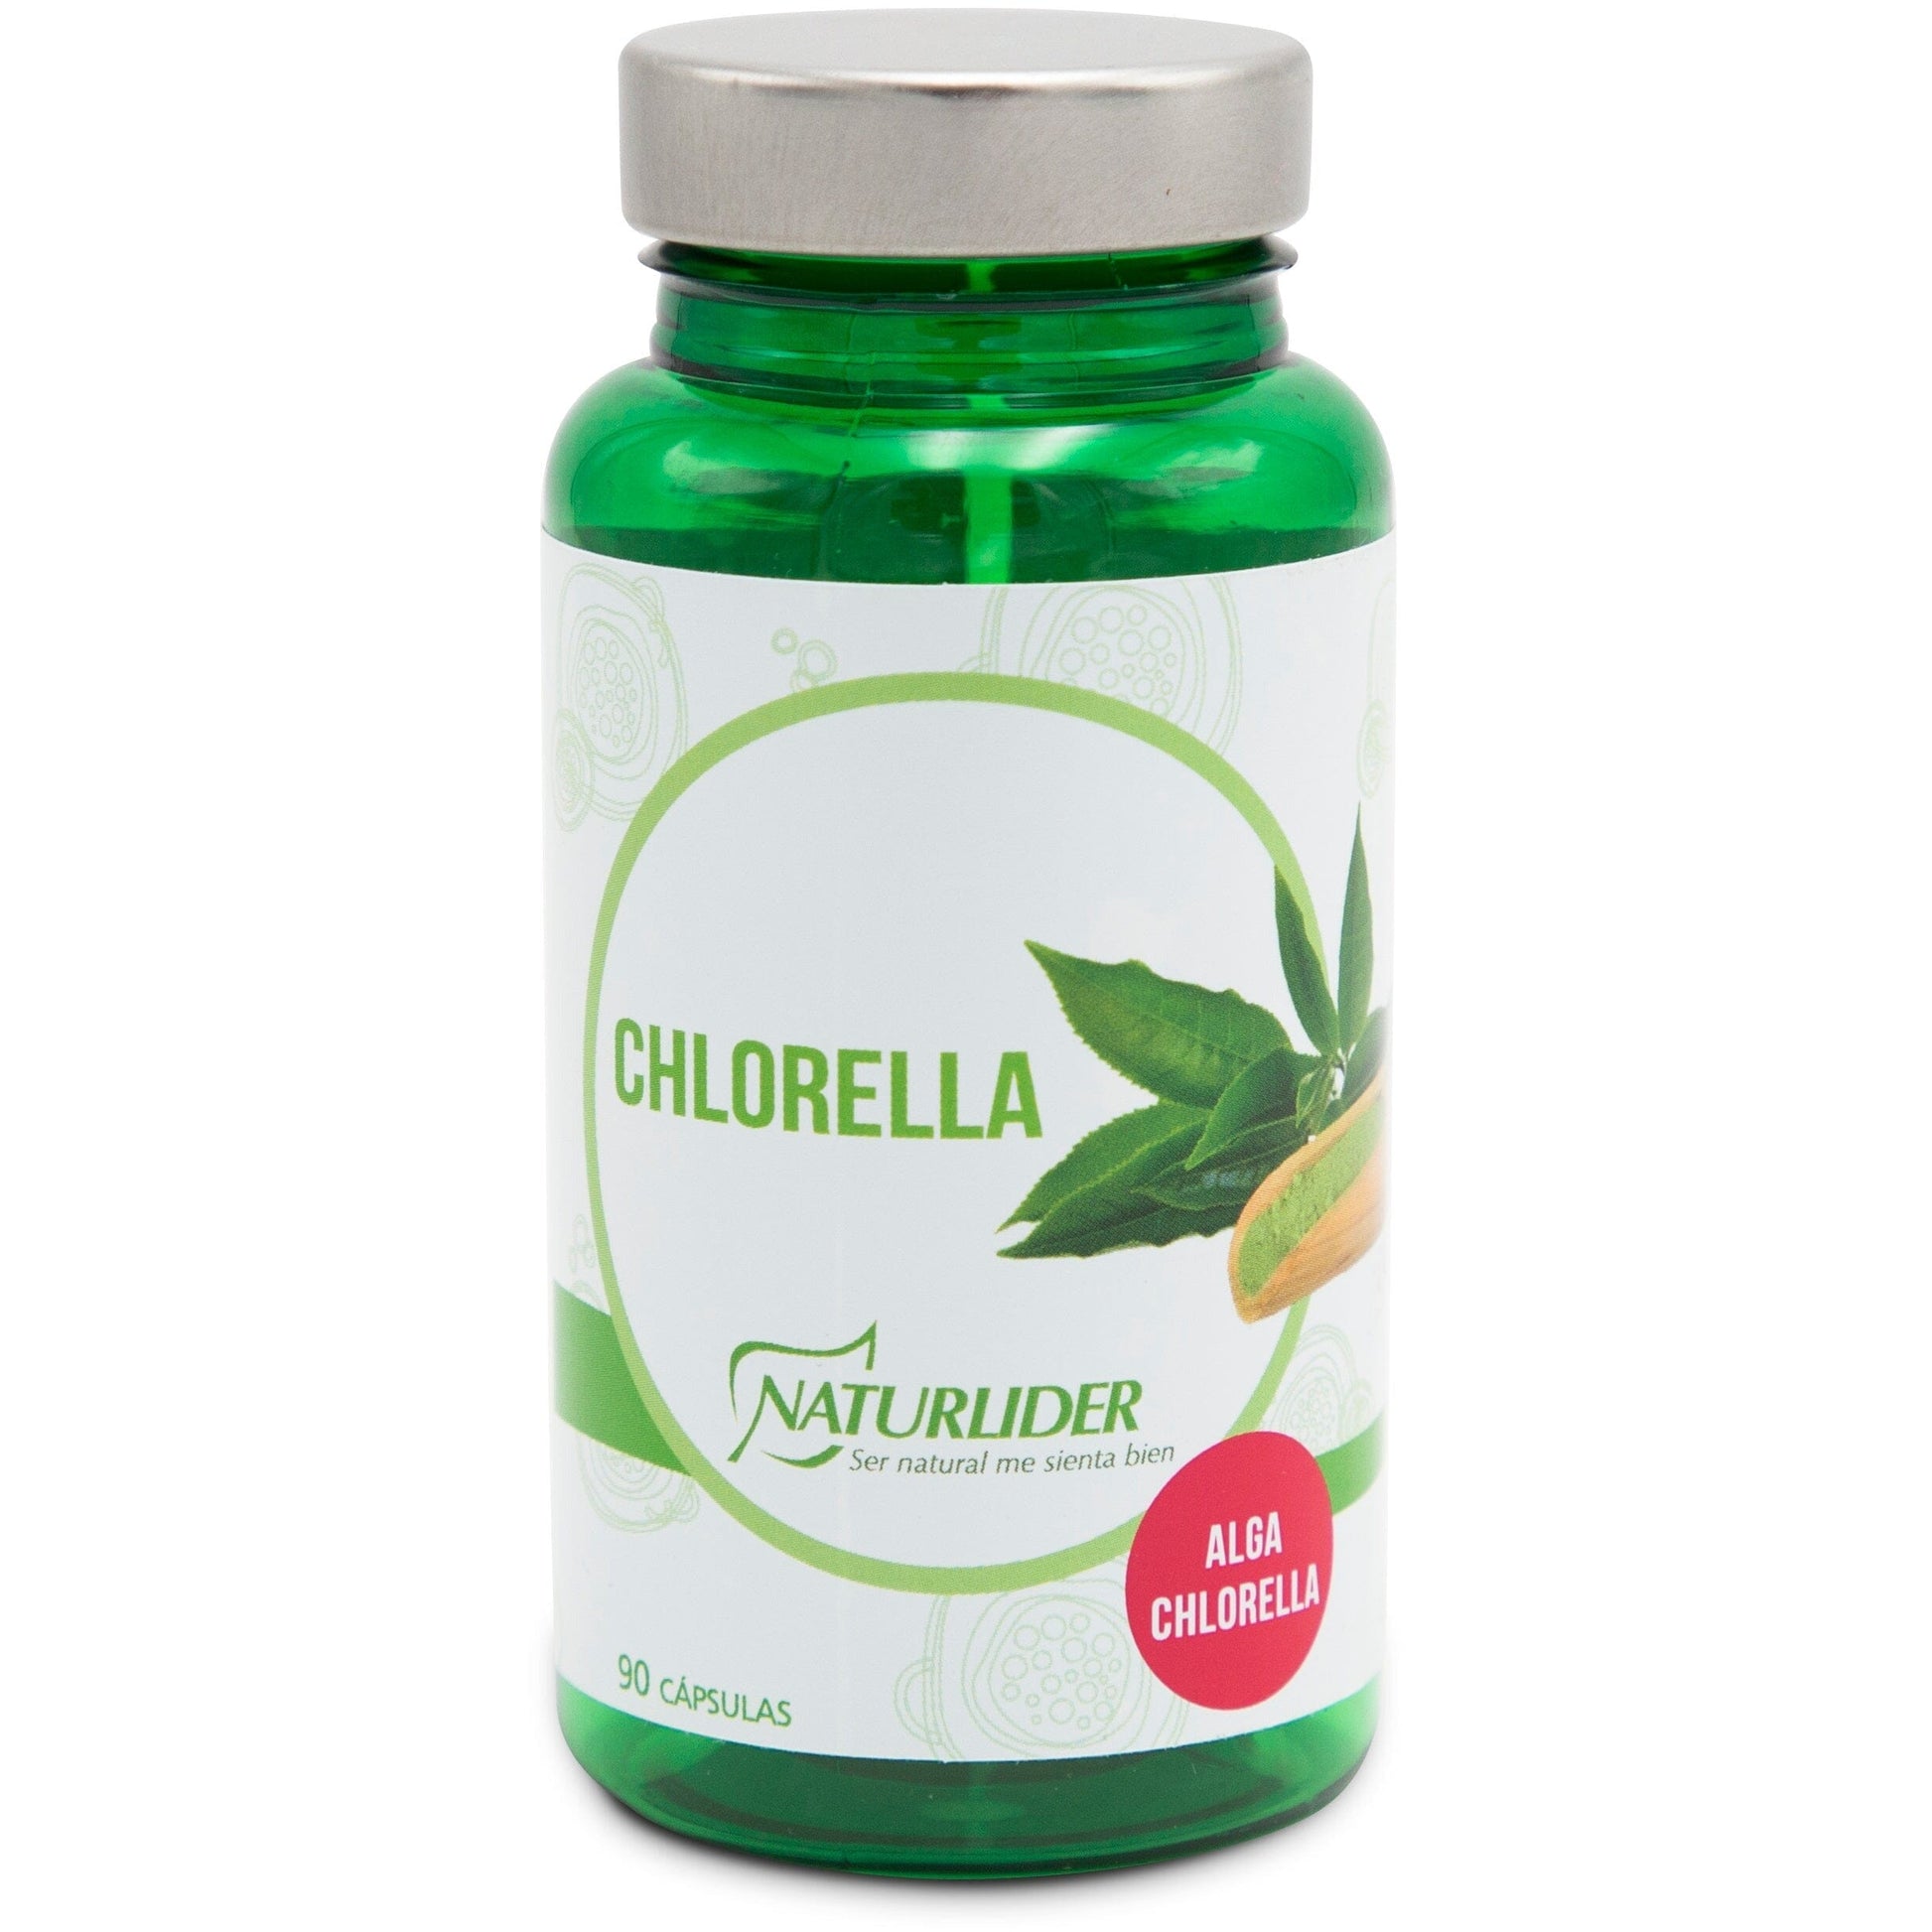 Chlorella 90 cápsulas | Naturlider - Dietetica Ferrer